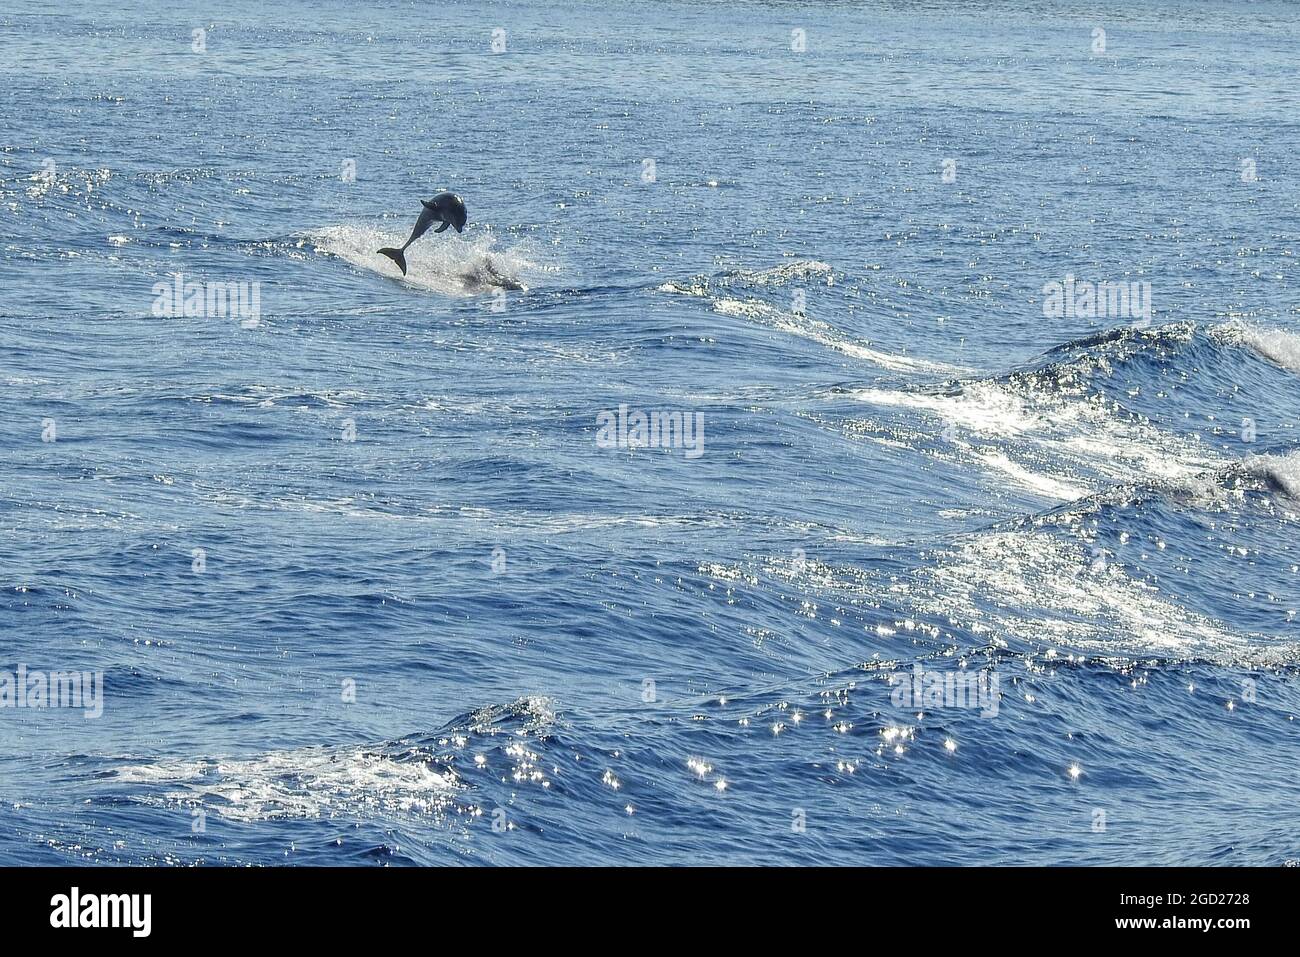 Un gruppo di delfini nel mare egeo tra le isole greche di Rodi e Halki. Foto Stock